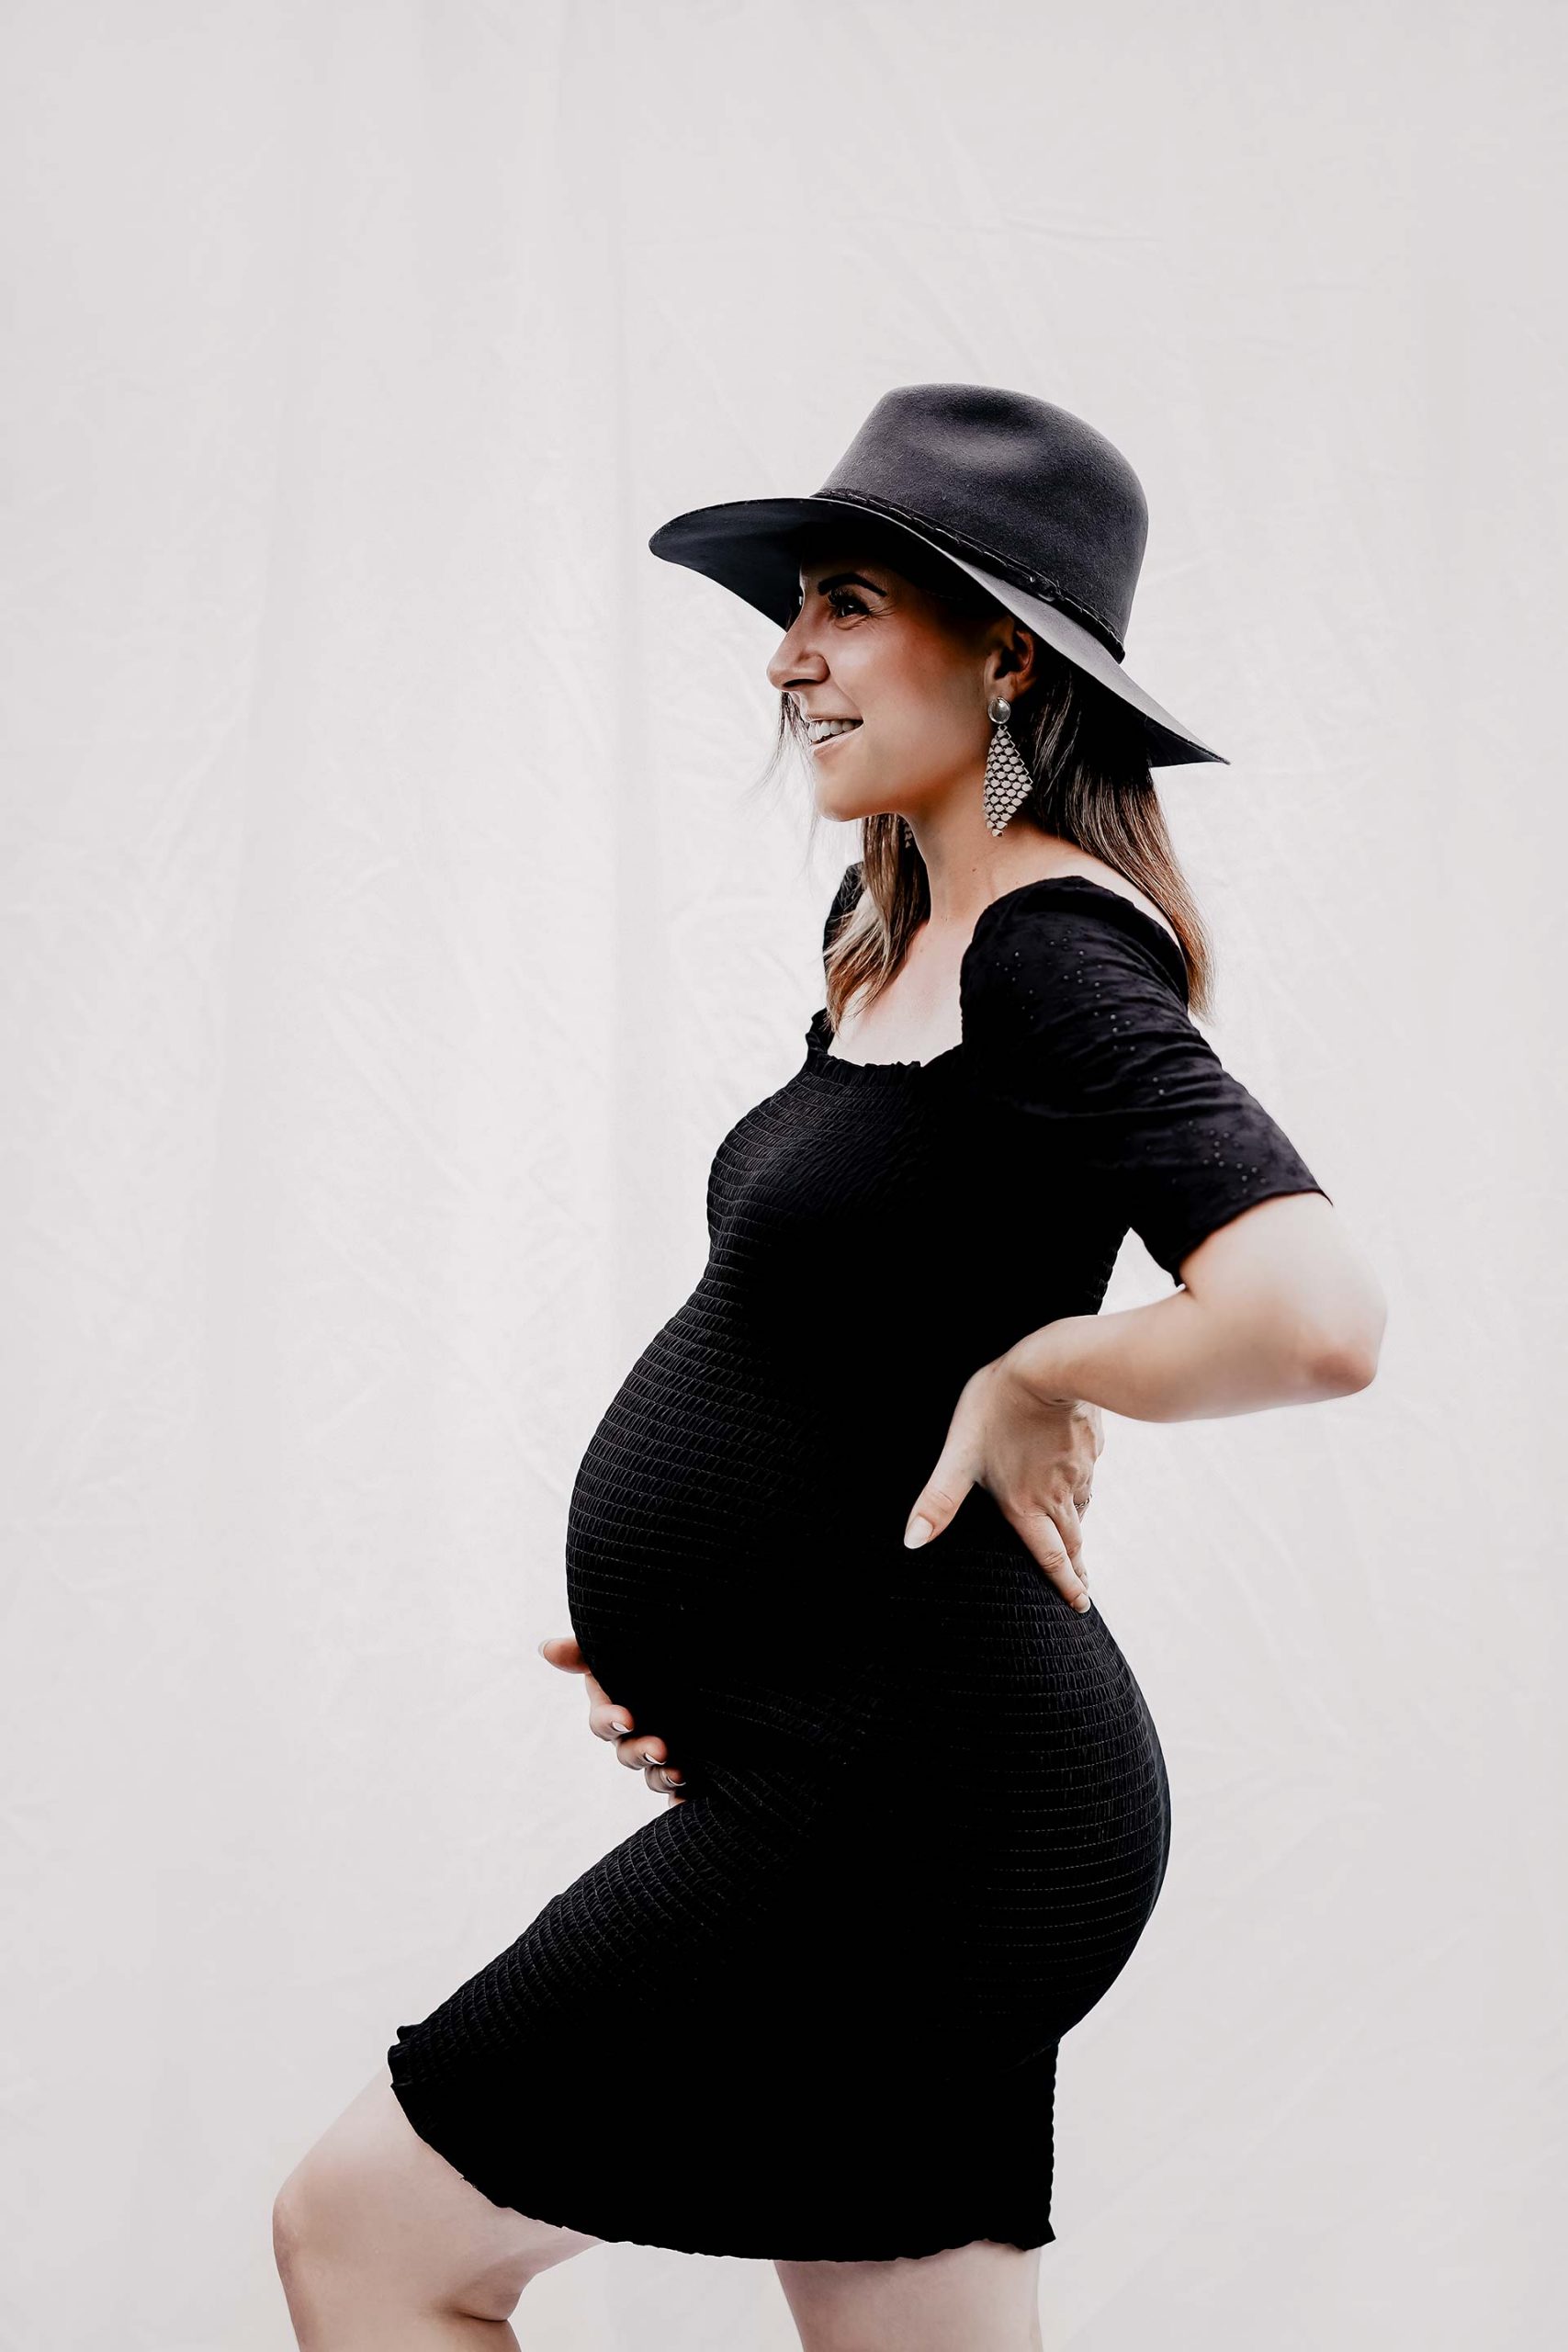 Heute möchte ich meine Tipps für ein schönes Babybauch-Shooting mit dir teilen. Zugleich zeige ich dir am Mamablog auch ein paar Schwangerschaftsbilder, welche Fotografin Madeleine Gabl von uns gemacht hat. www.whoismocca.com